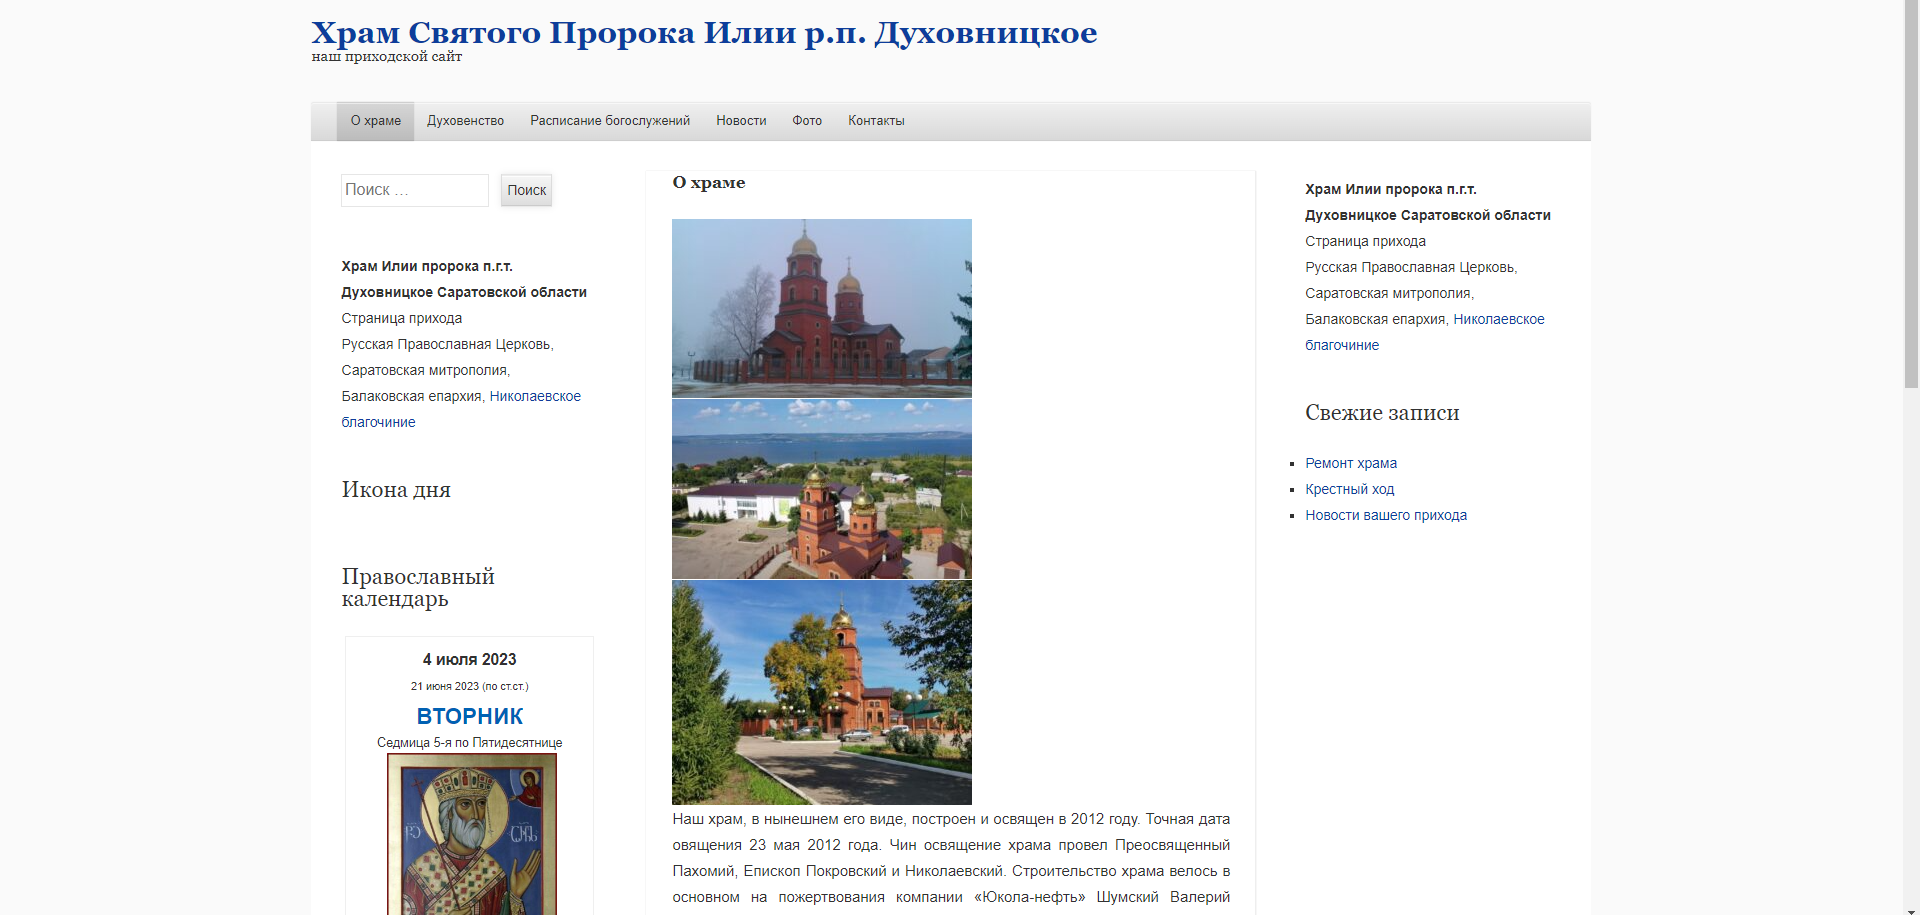 Сайт храма во имя святого пророка Божия Илии р.п. Духовницкое начал свою работу